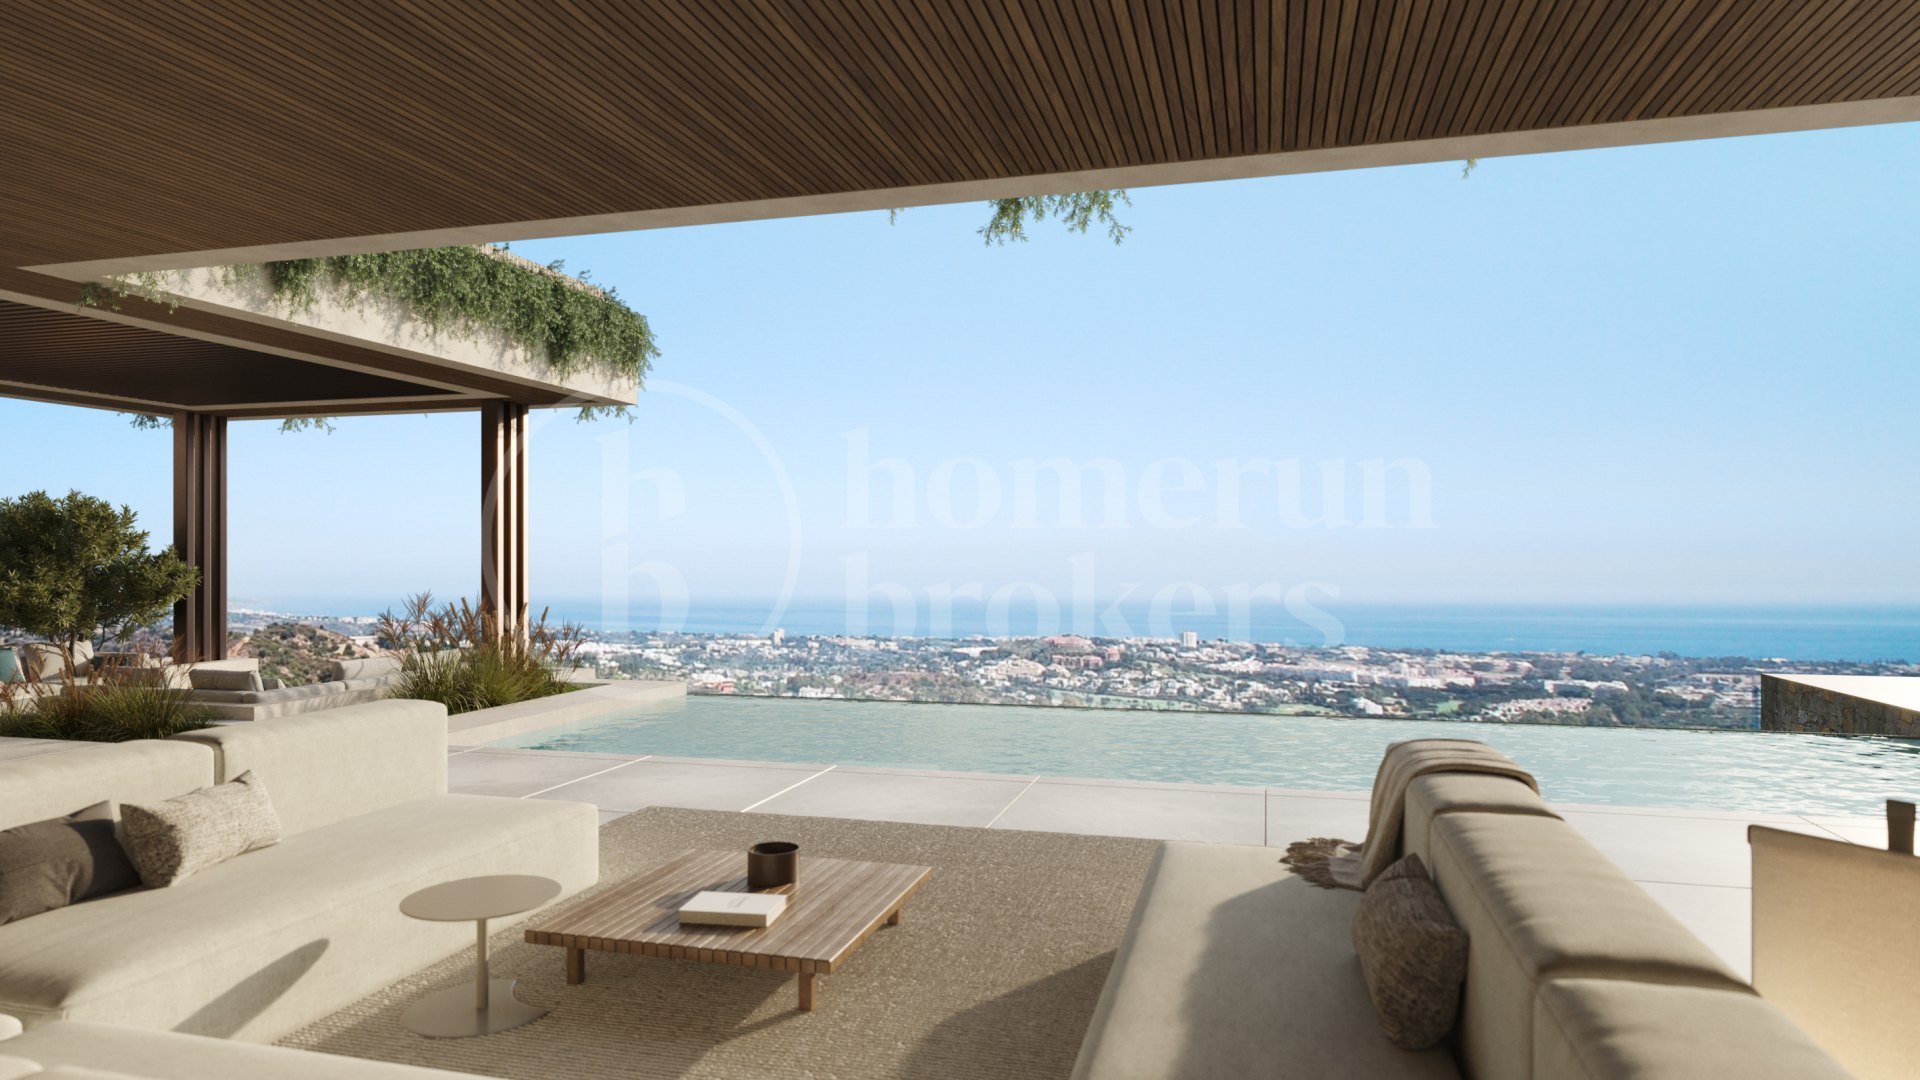 The Sky Villas- New Development of Villas Norte of La Quinta